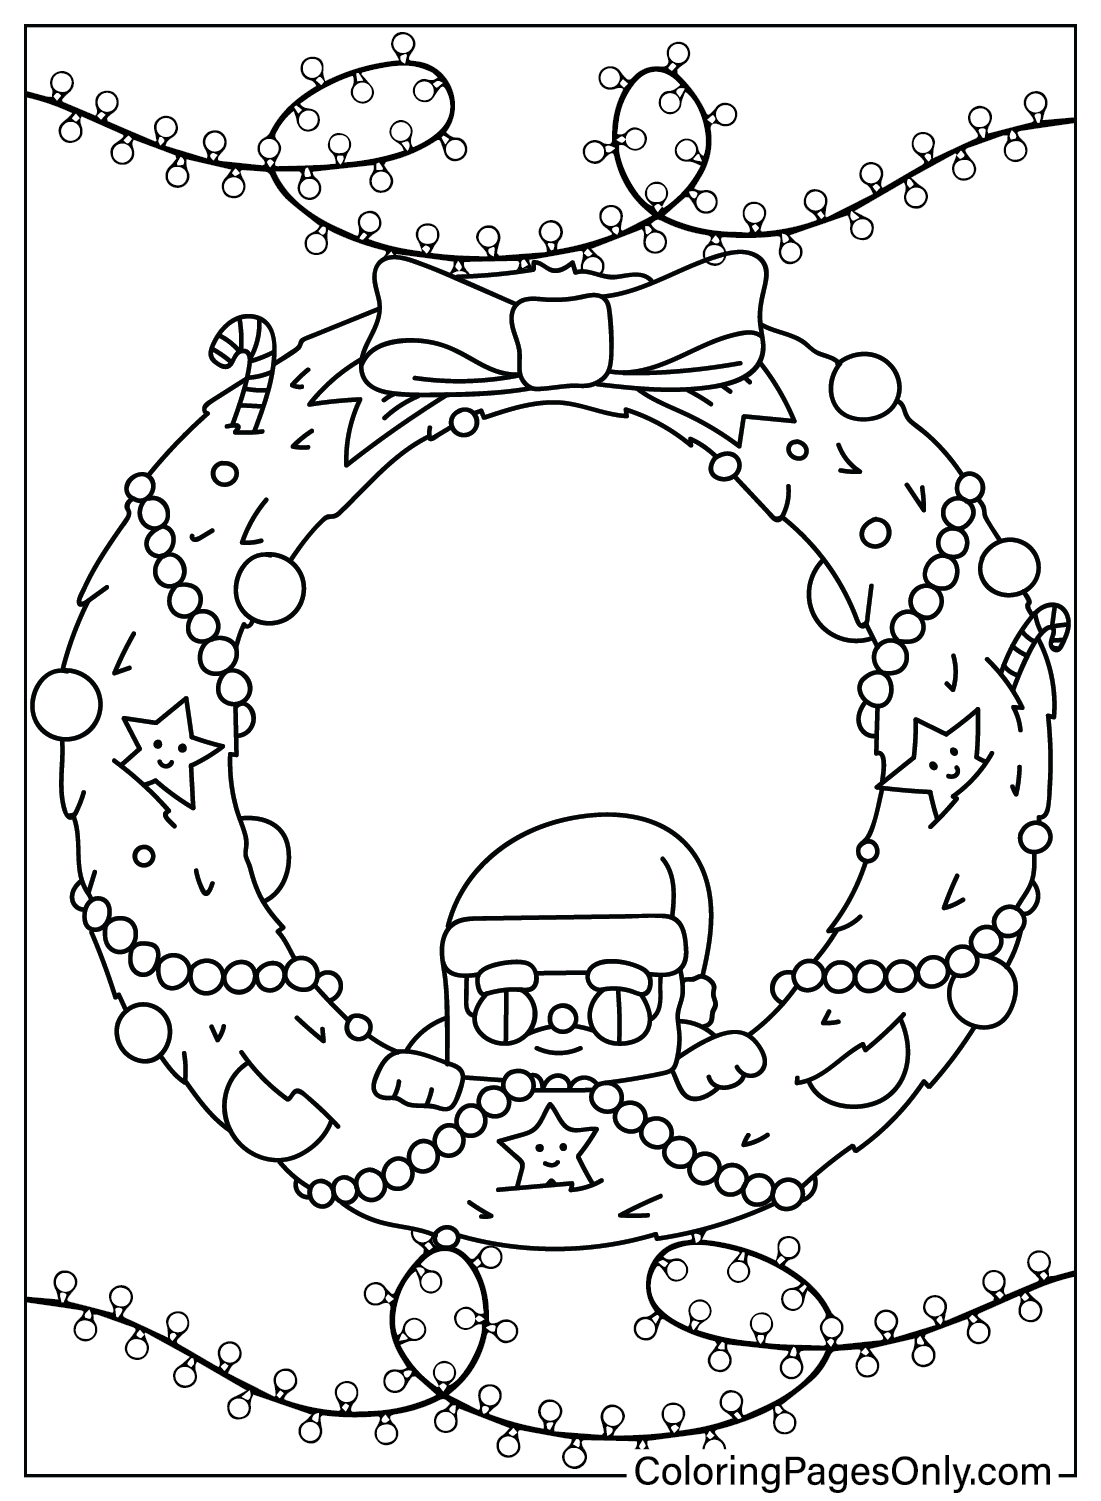 Página para colorear de corona de Navidad de Corona de Navidad